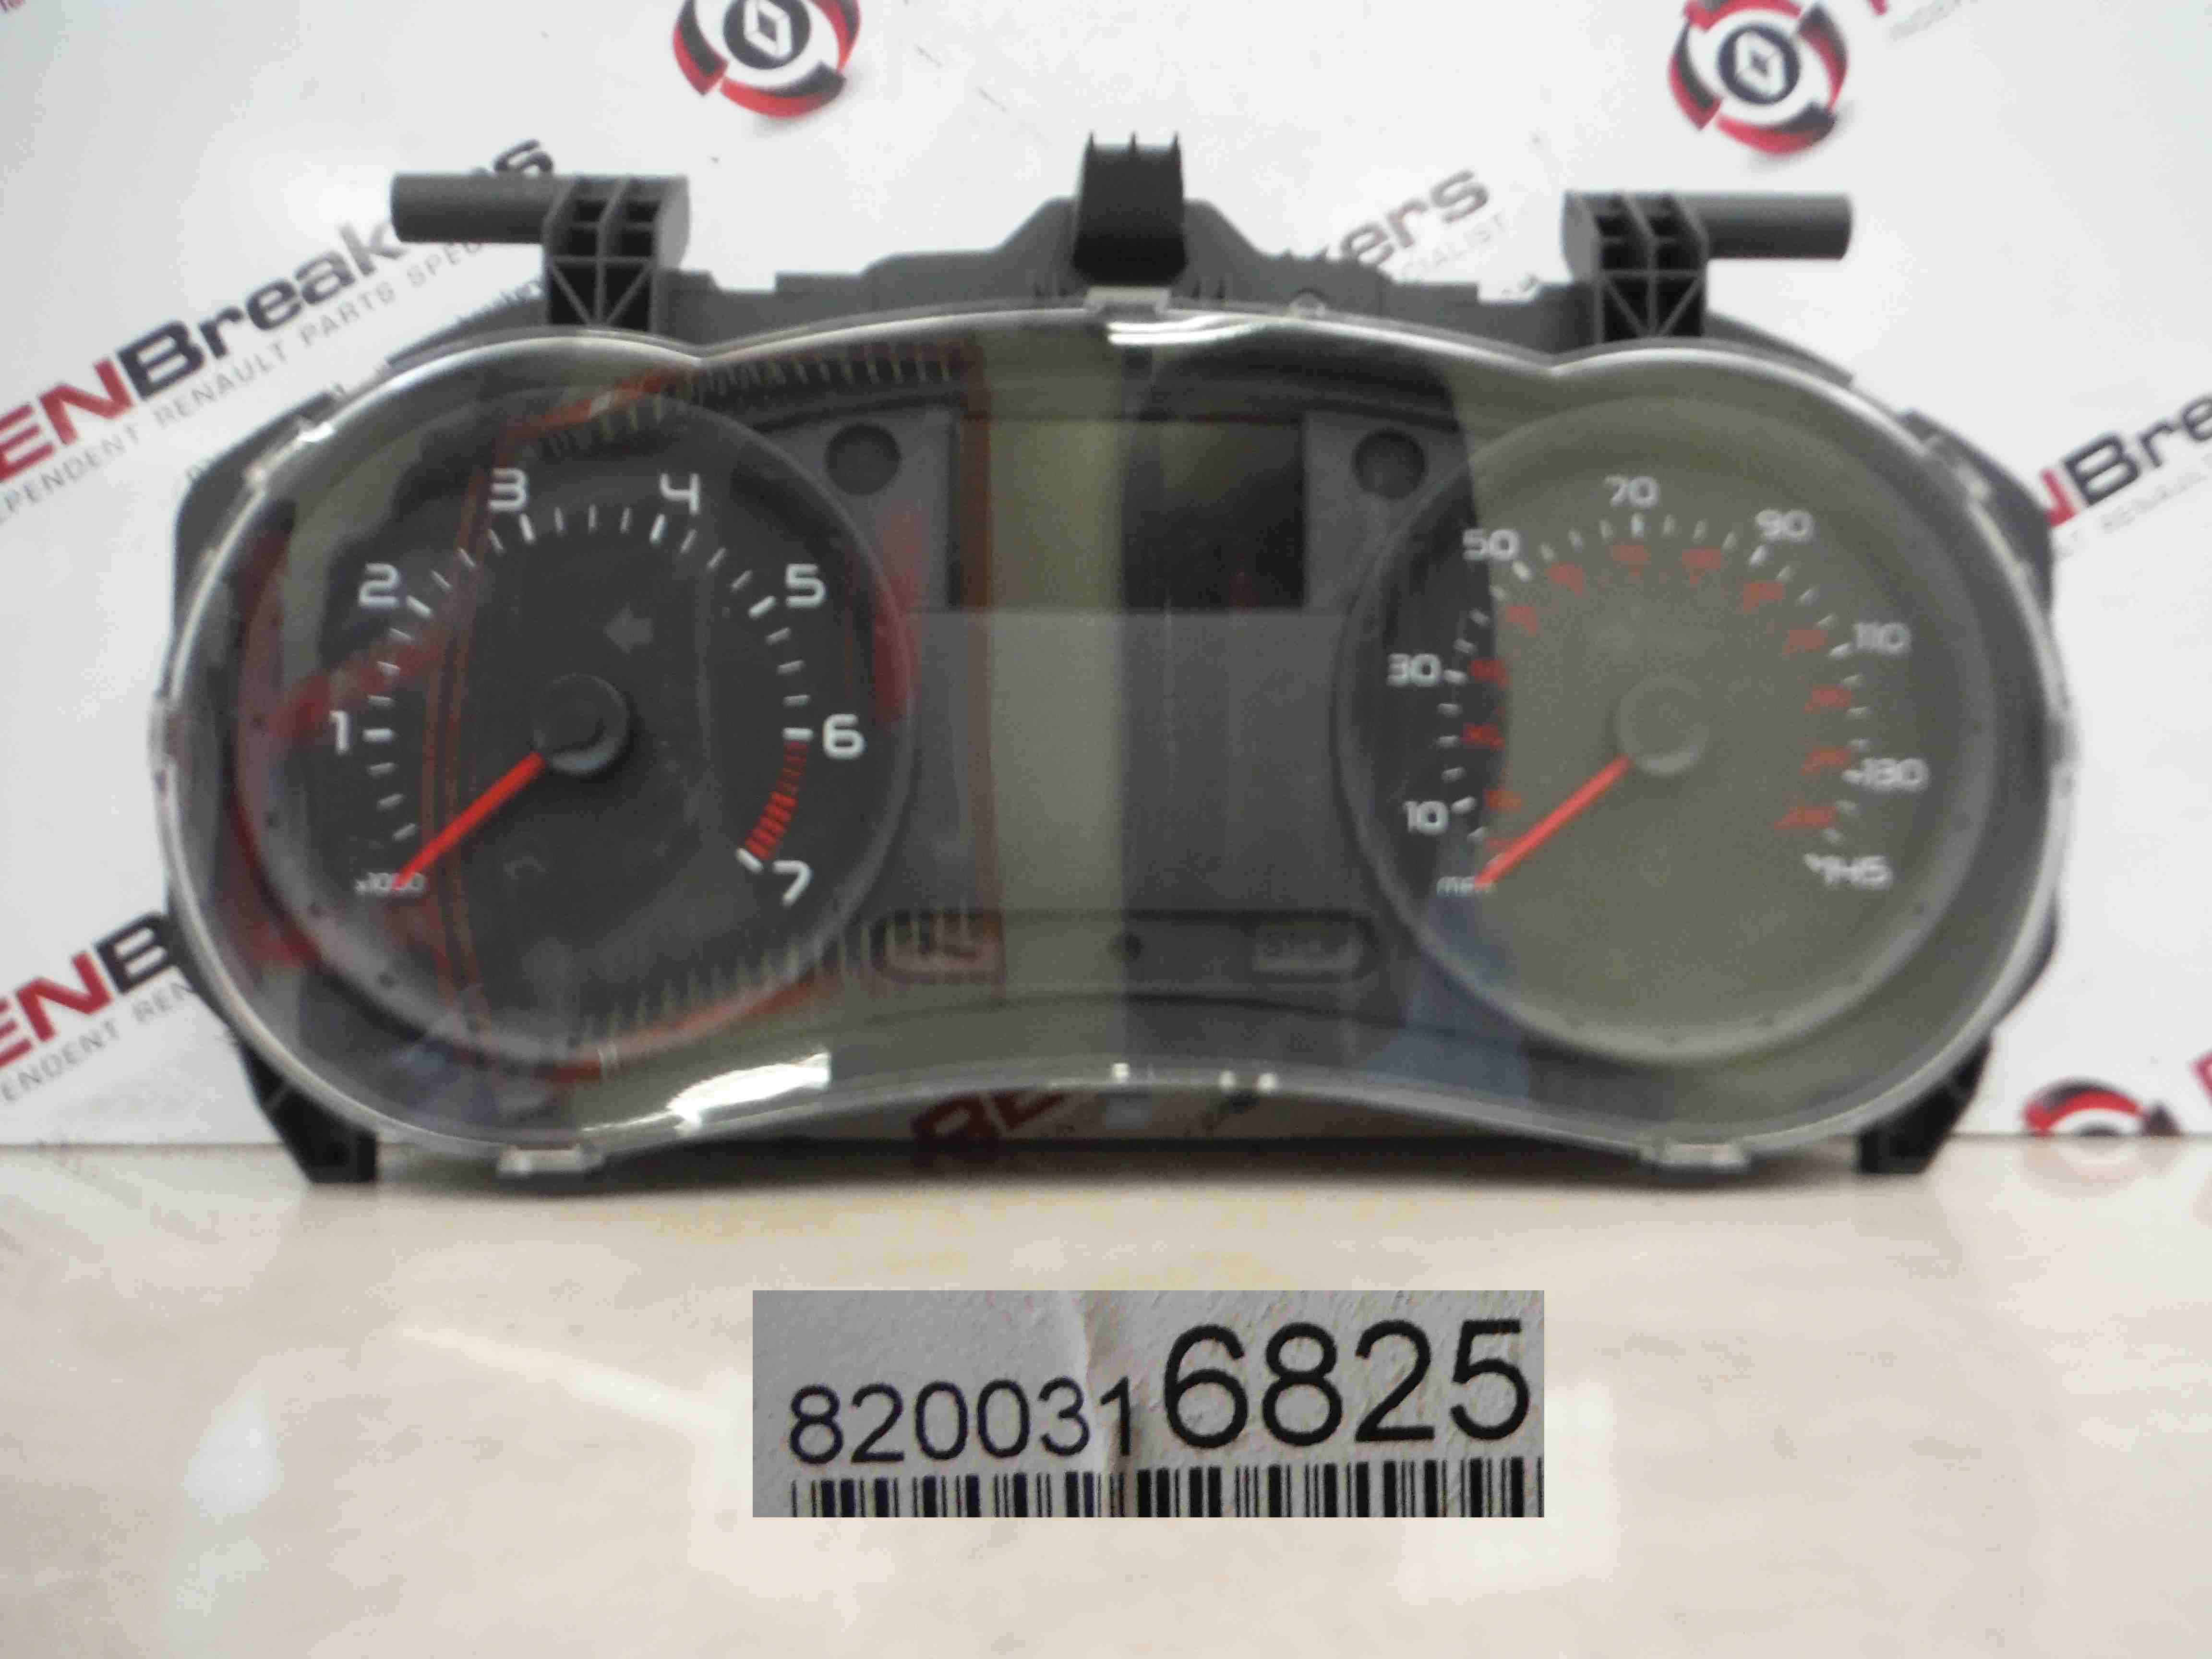 Renault Clio MK3 2005-2009 Instrument Panel Dials Clocks Gauges  8200316825